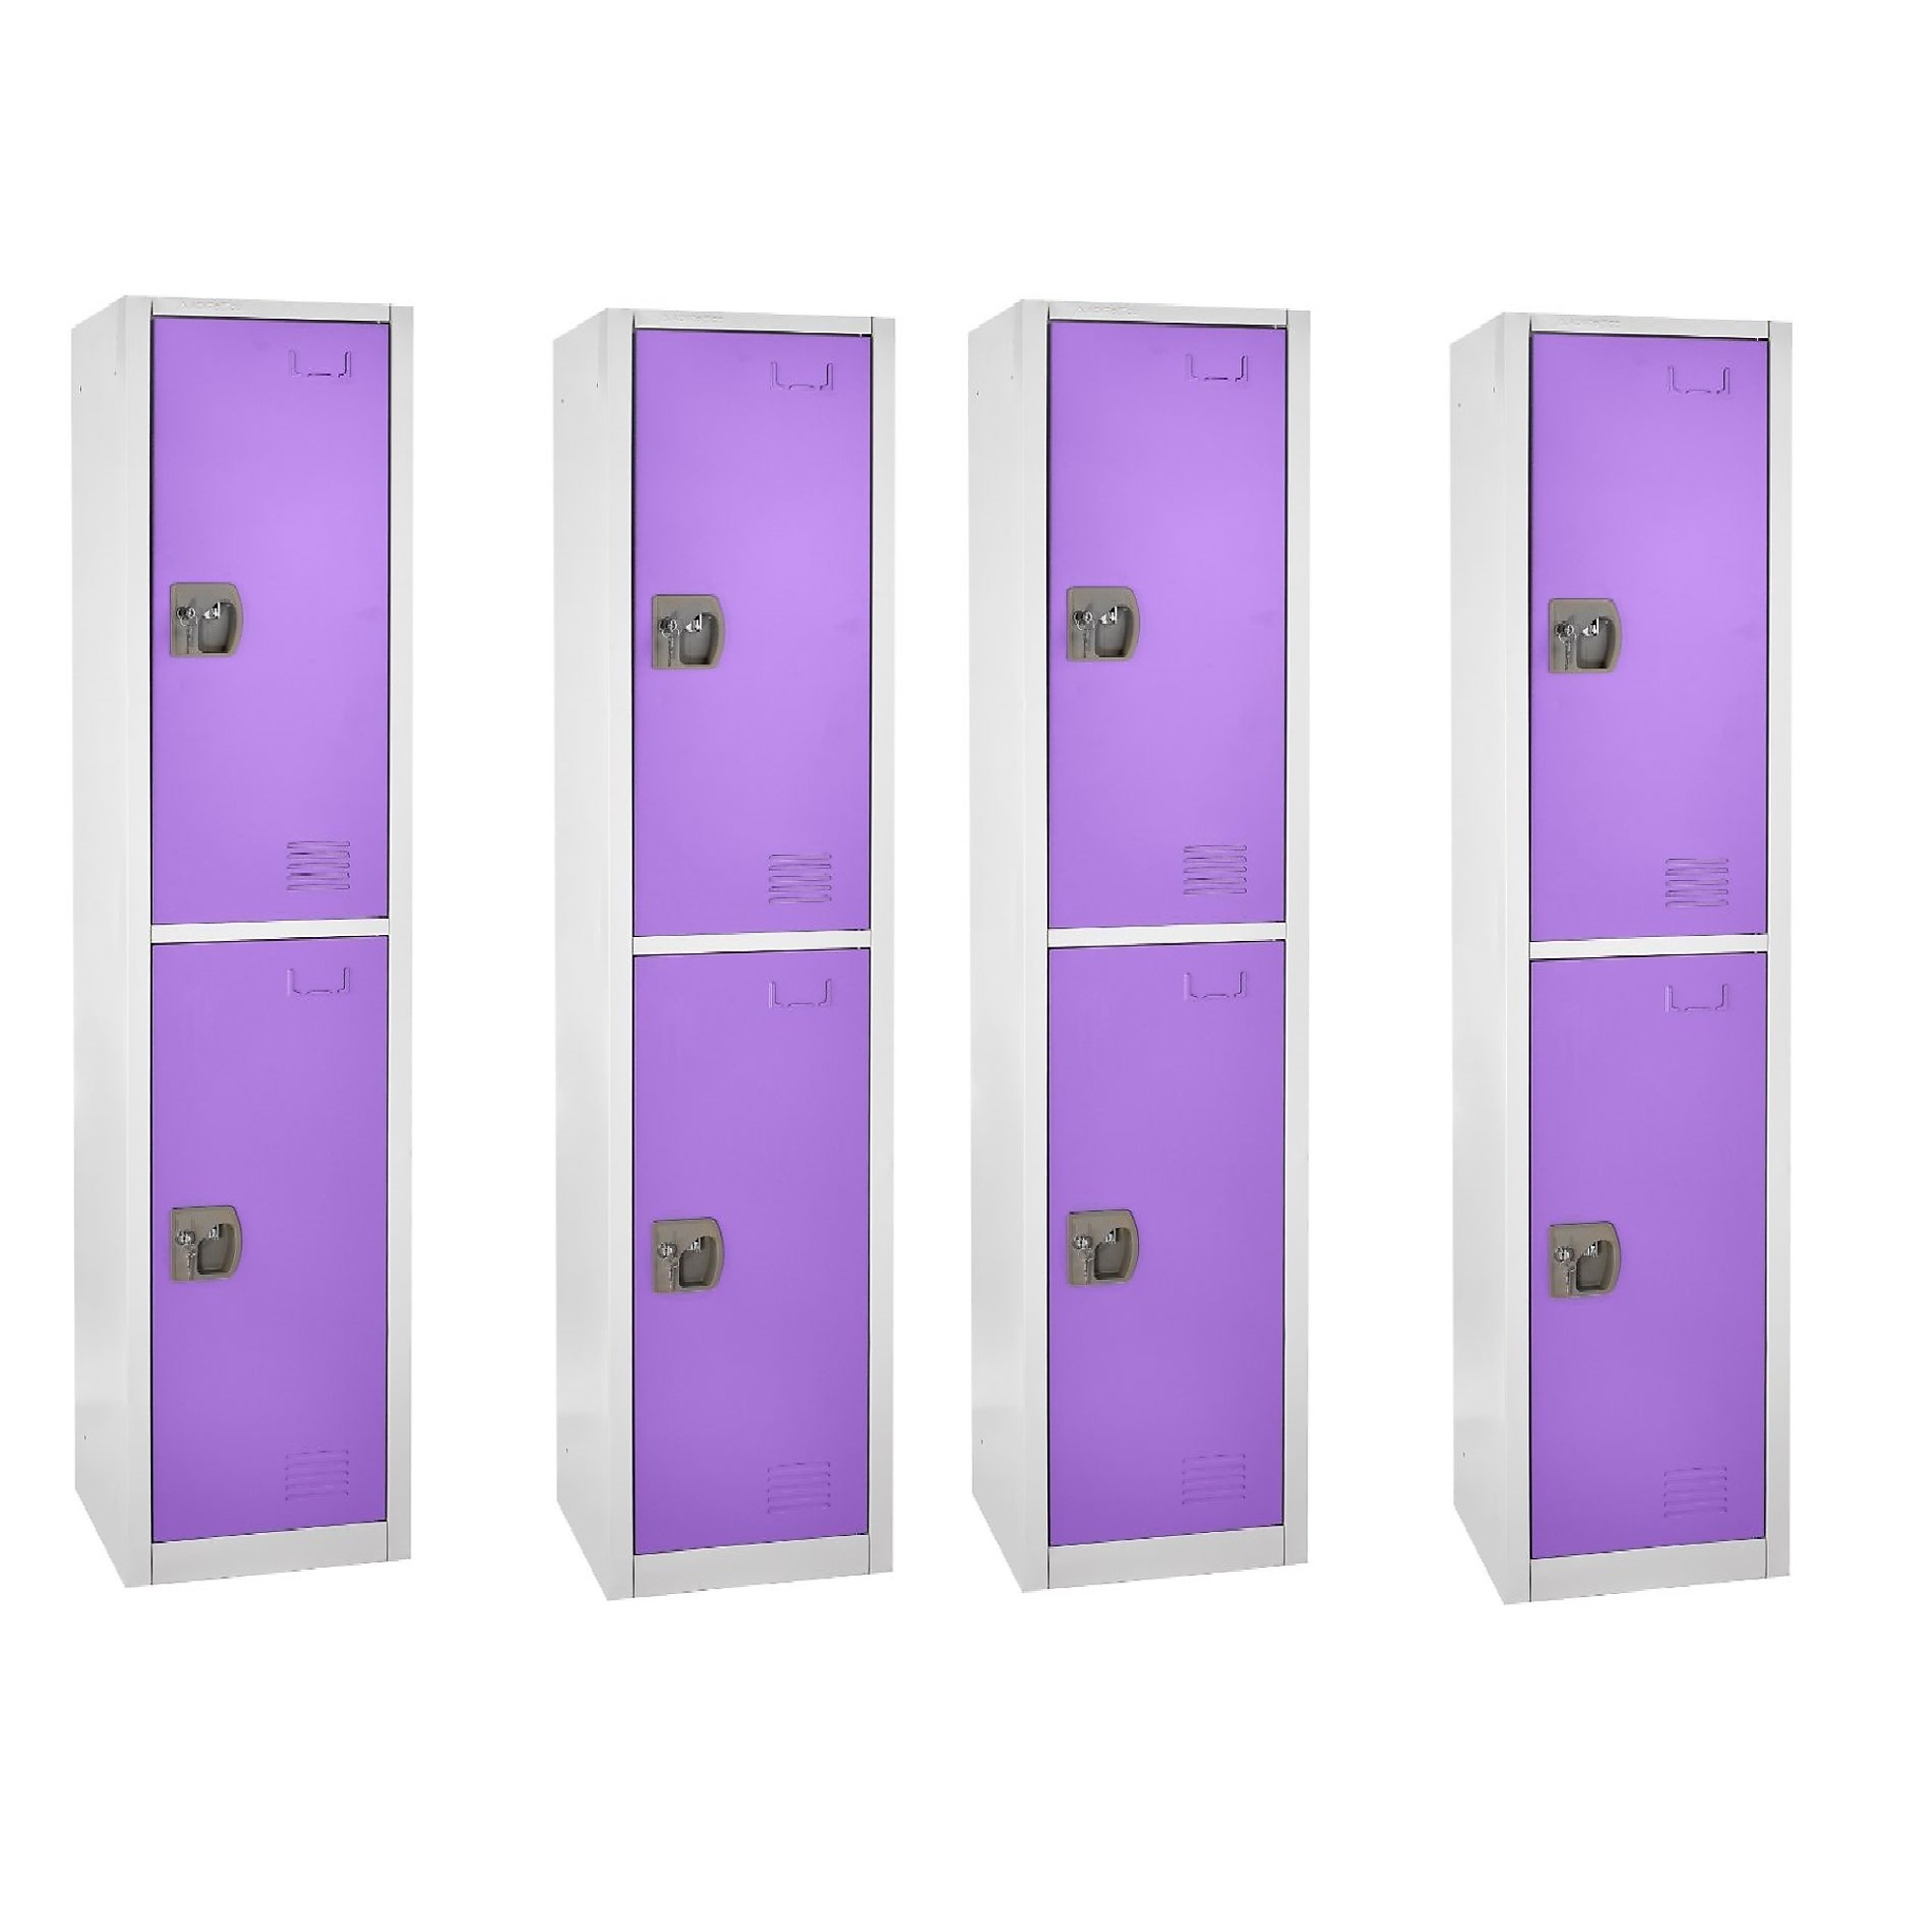 Alpine, 72Inch H 2-Tier Steel Locker, Purple, 4-Pack, Height 72 in, Width 12 in, Color Purple, Model ADI629-202-PUR-4PK